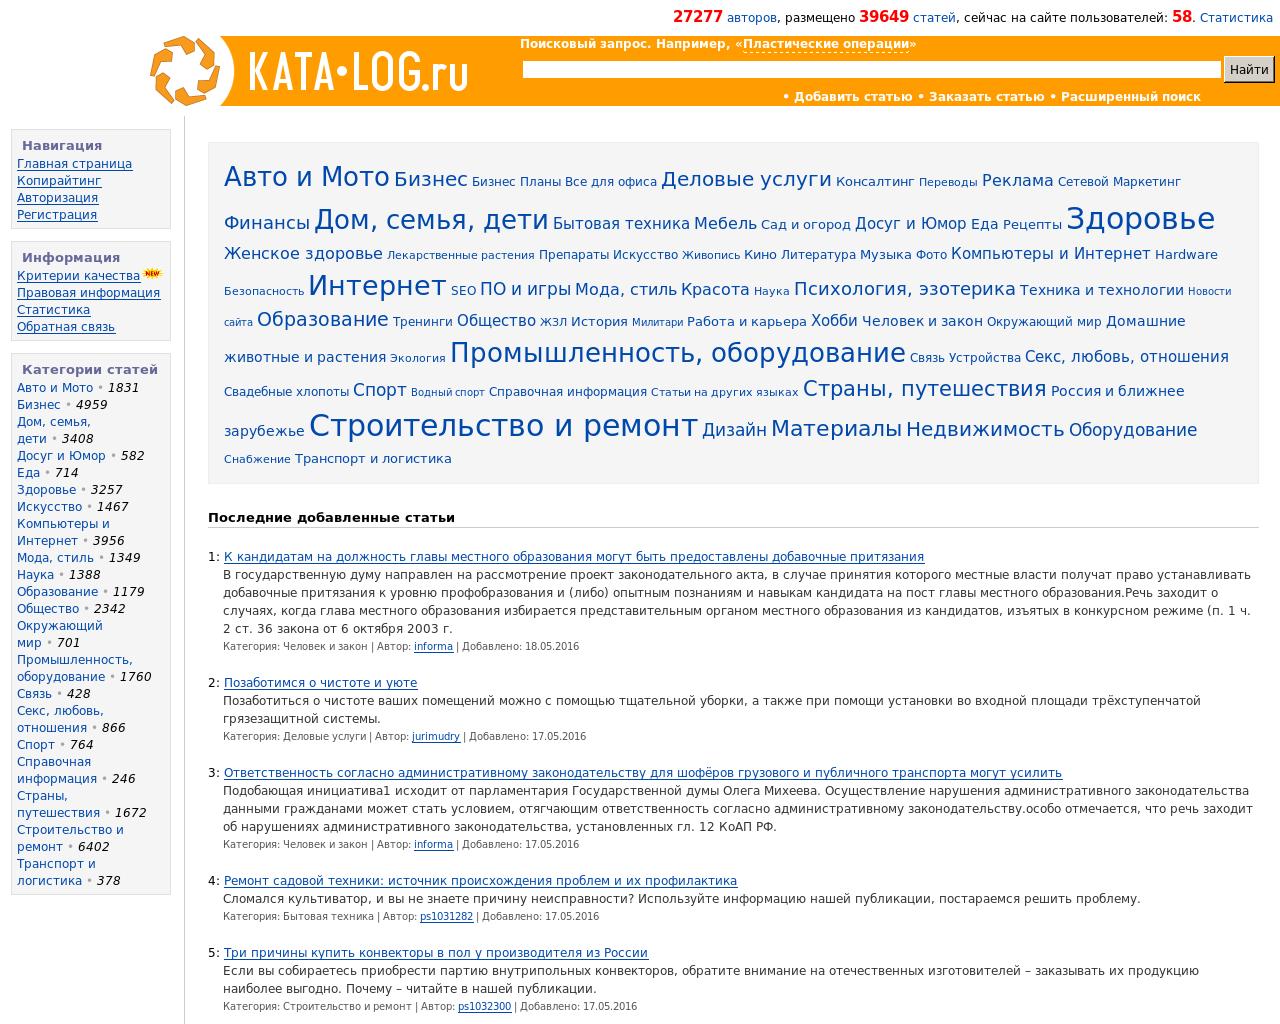 Изображение сайта kata-log.ru в разрешении 1280x1024